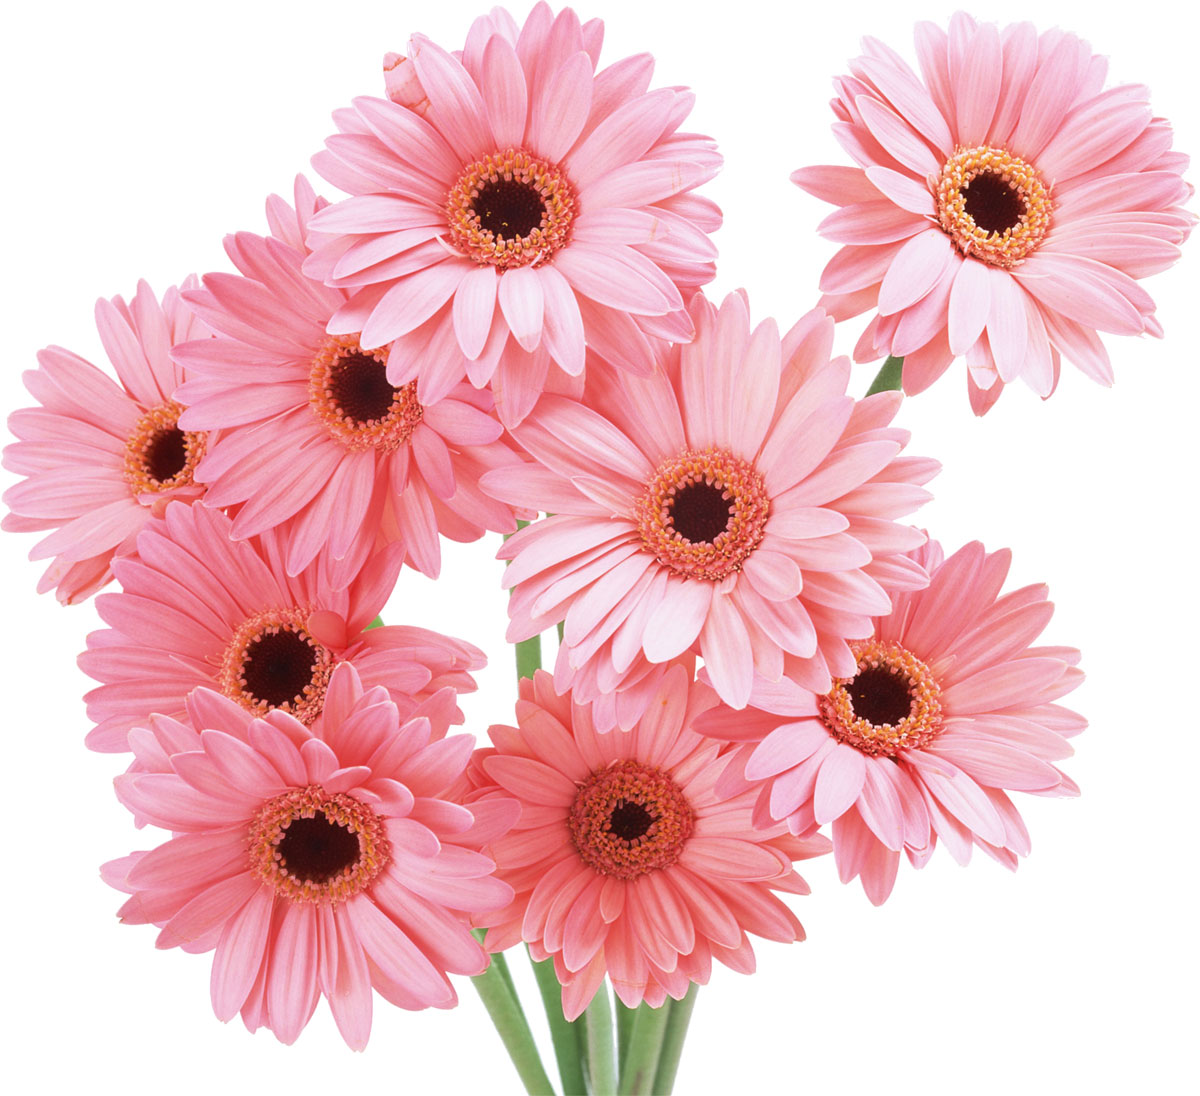 花や葉の写真 画像 フリー素材 No 169 ガーベラ ピンク